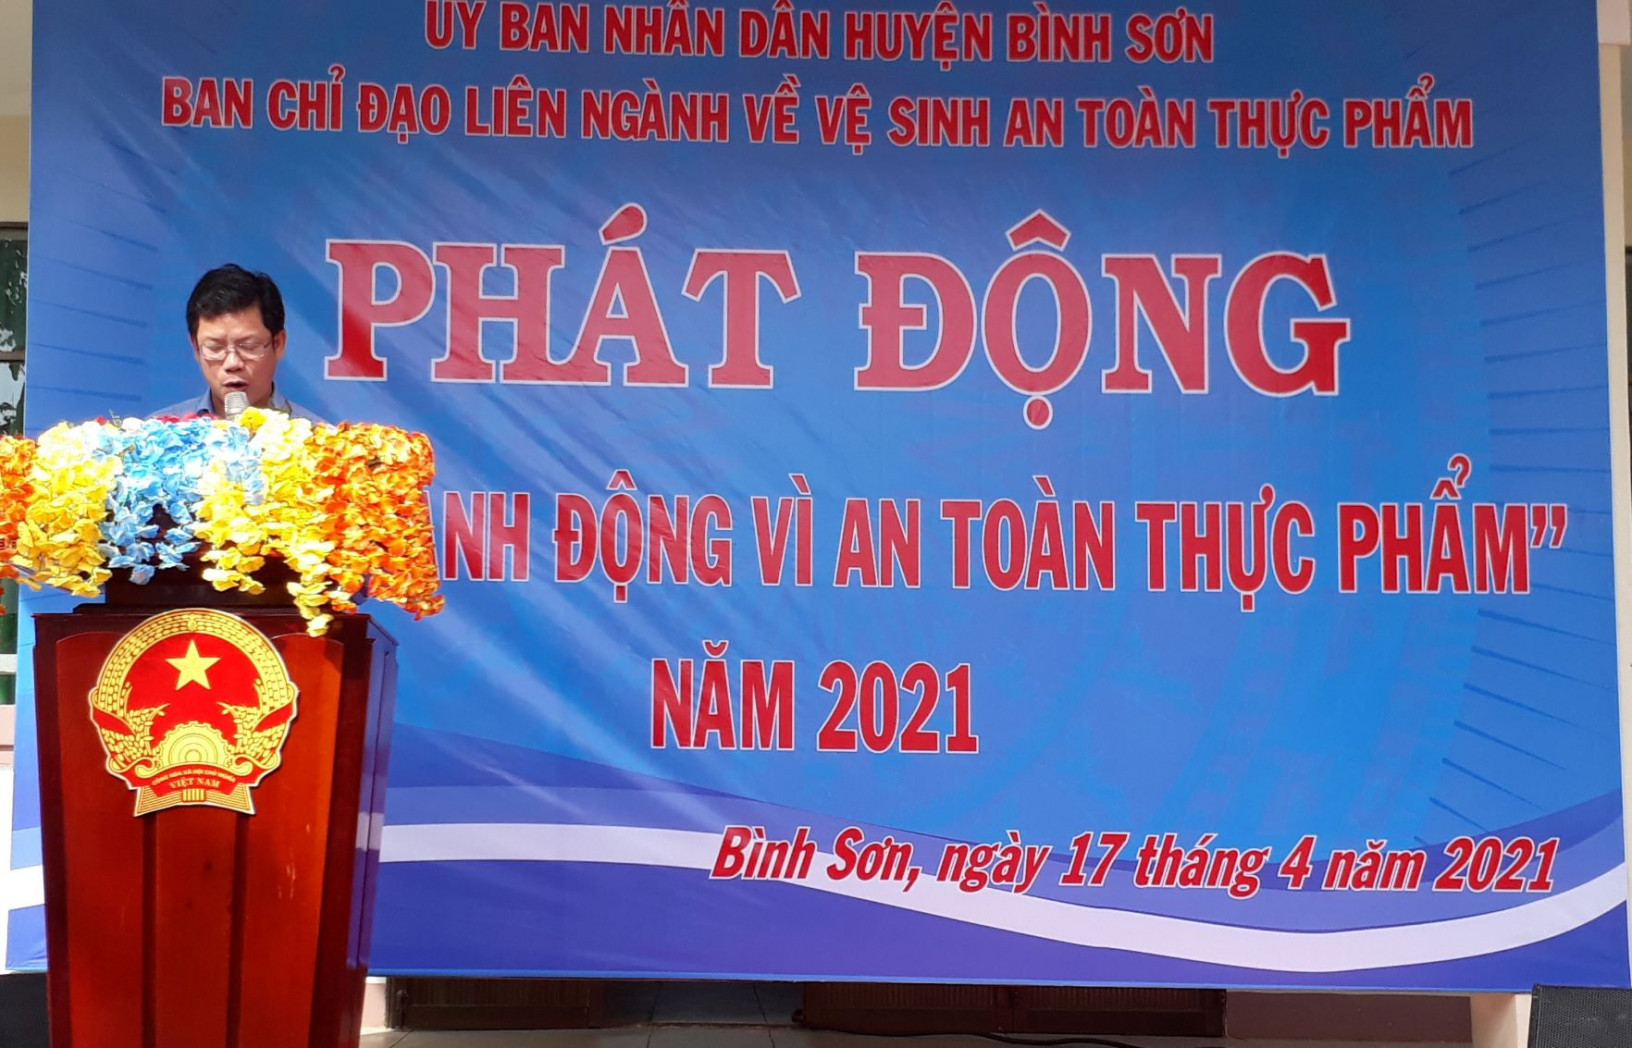 Ông Phạm Quang Sự, Phó Chủ tịch UBND huyện Bình Sơn phát biểu tại buổi lễ